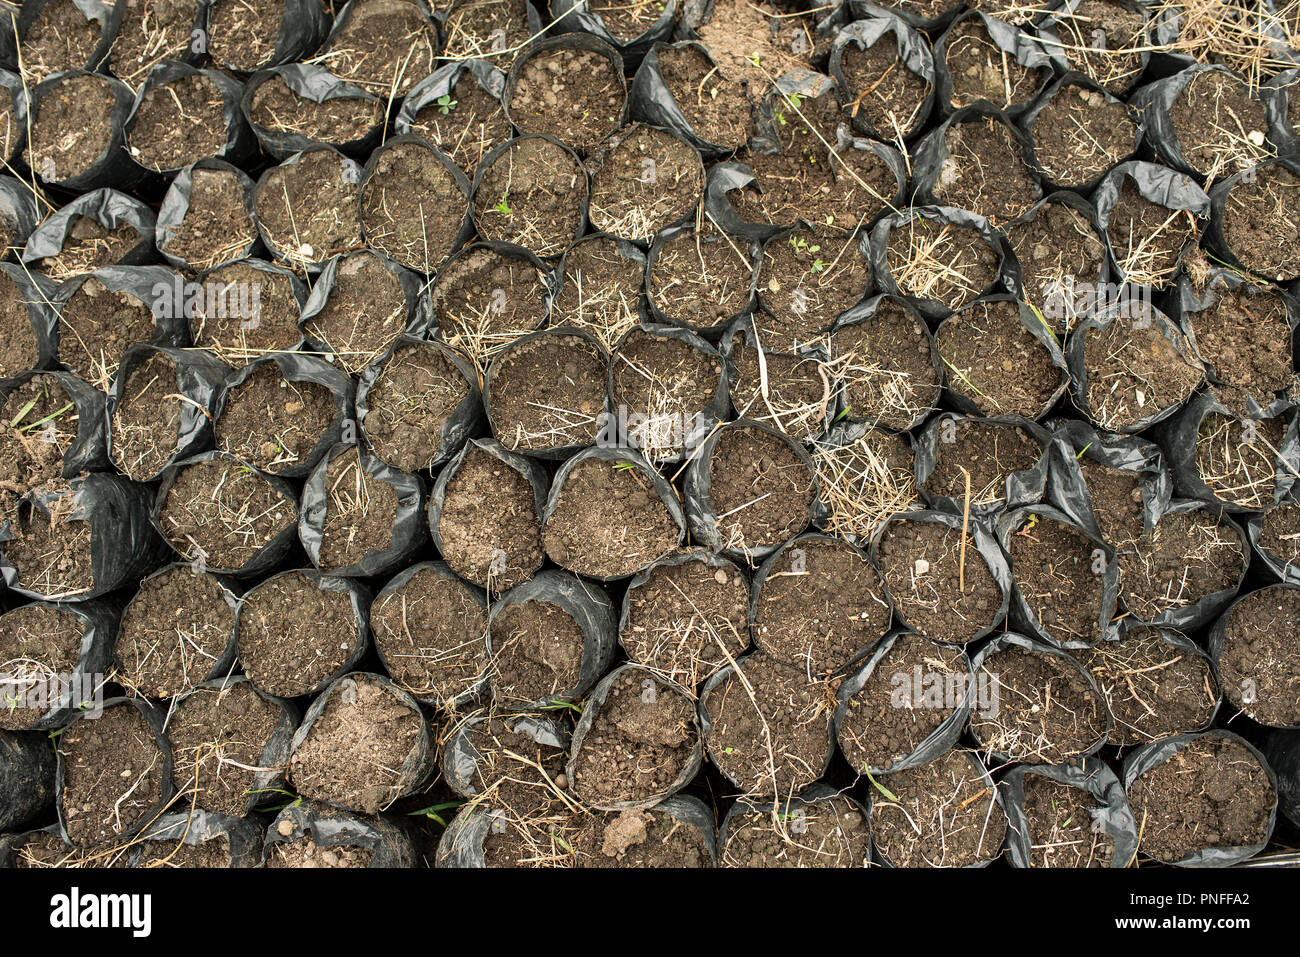 3/10 Reportage photo : palm Cire de graines semées dans le sol, dans des sacs. L'Armée nationale travaillant sur la plantation de palmiers de cire dans la vallée de Cocora, Colombie. 13 Sep 2018 Banque D'Images